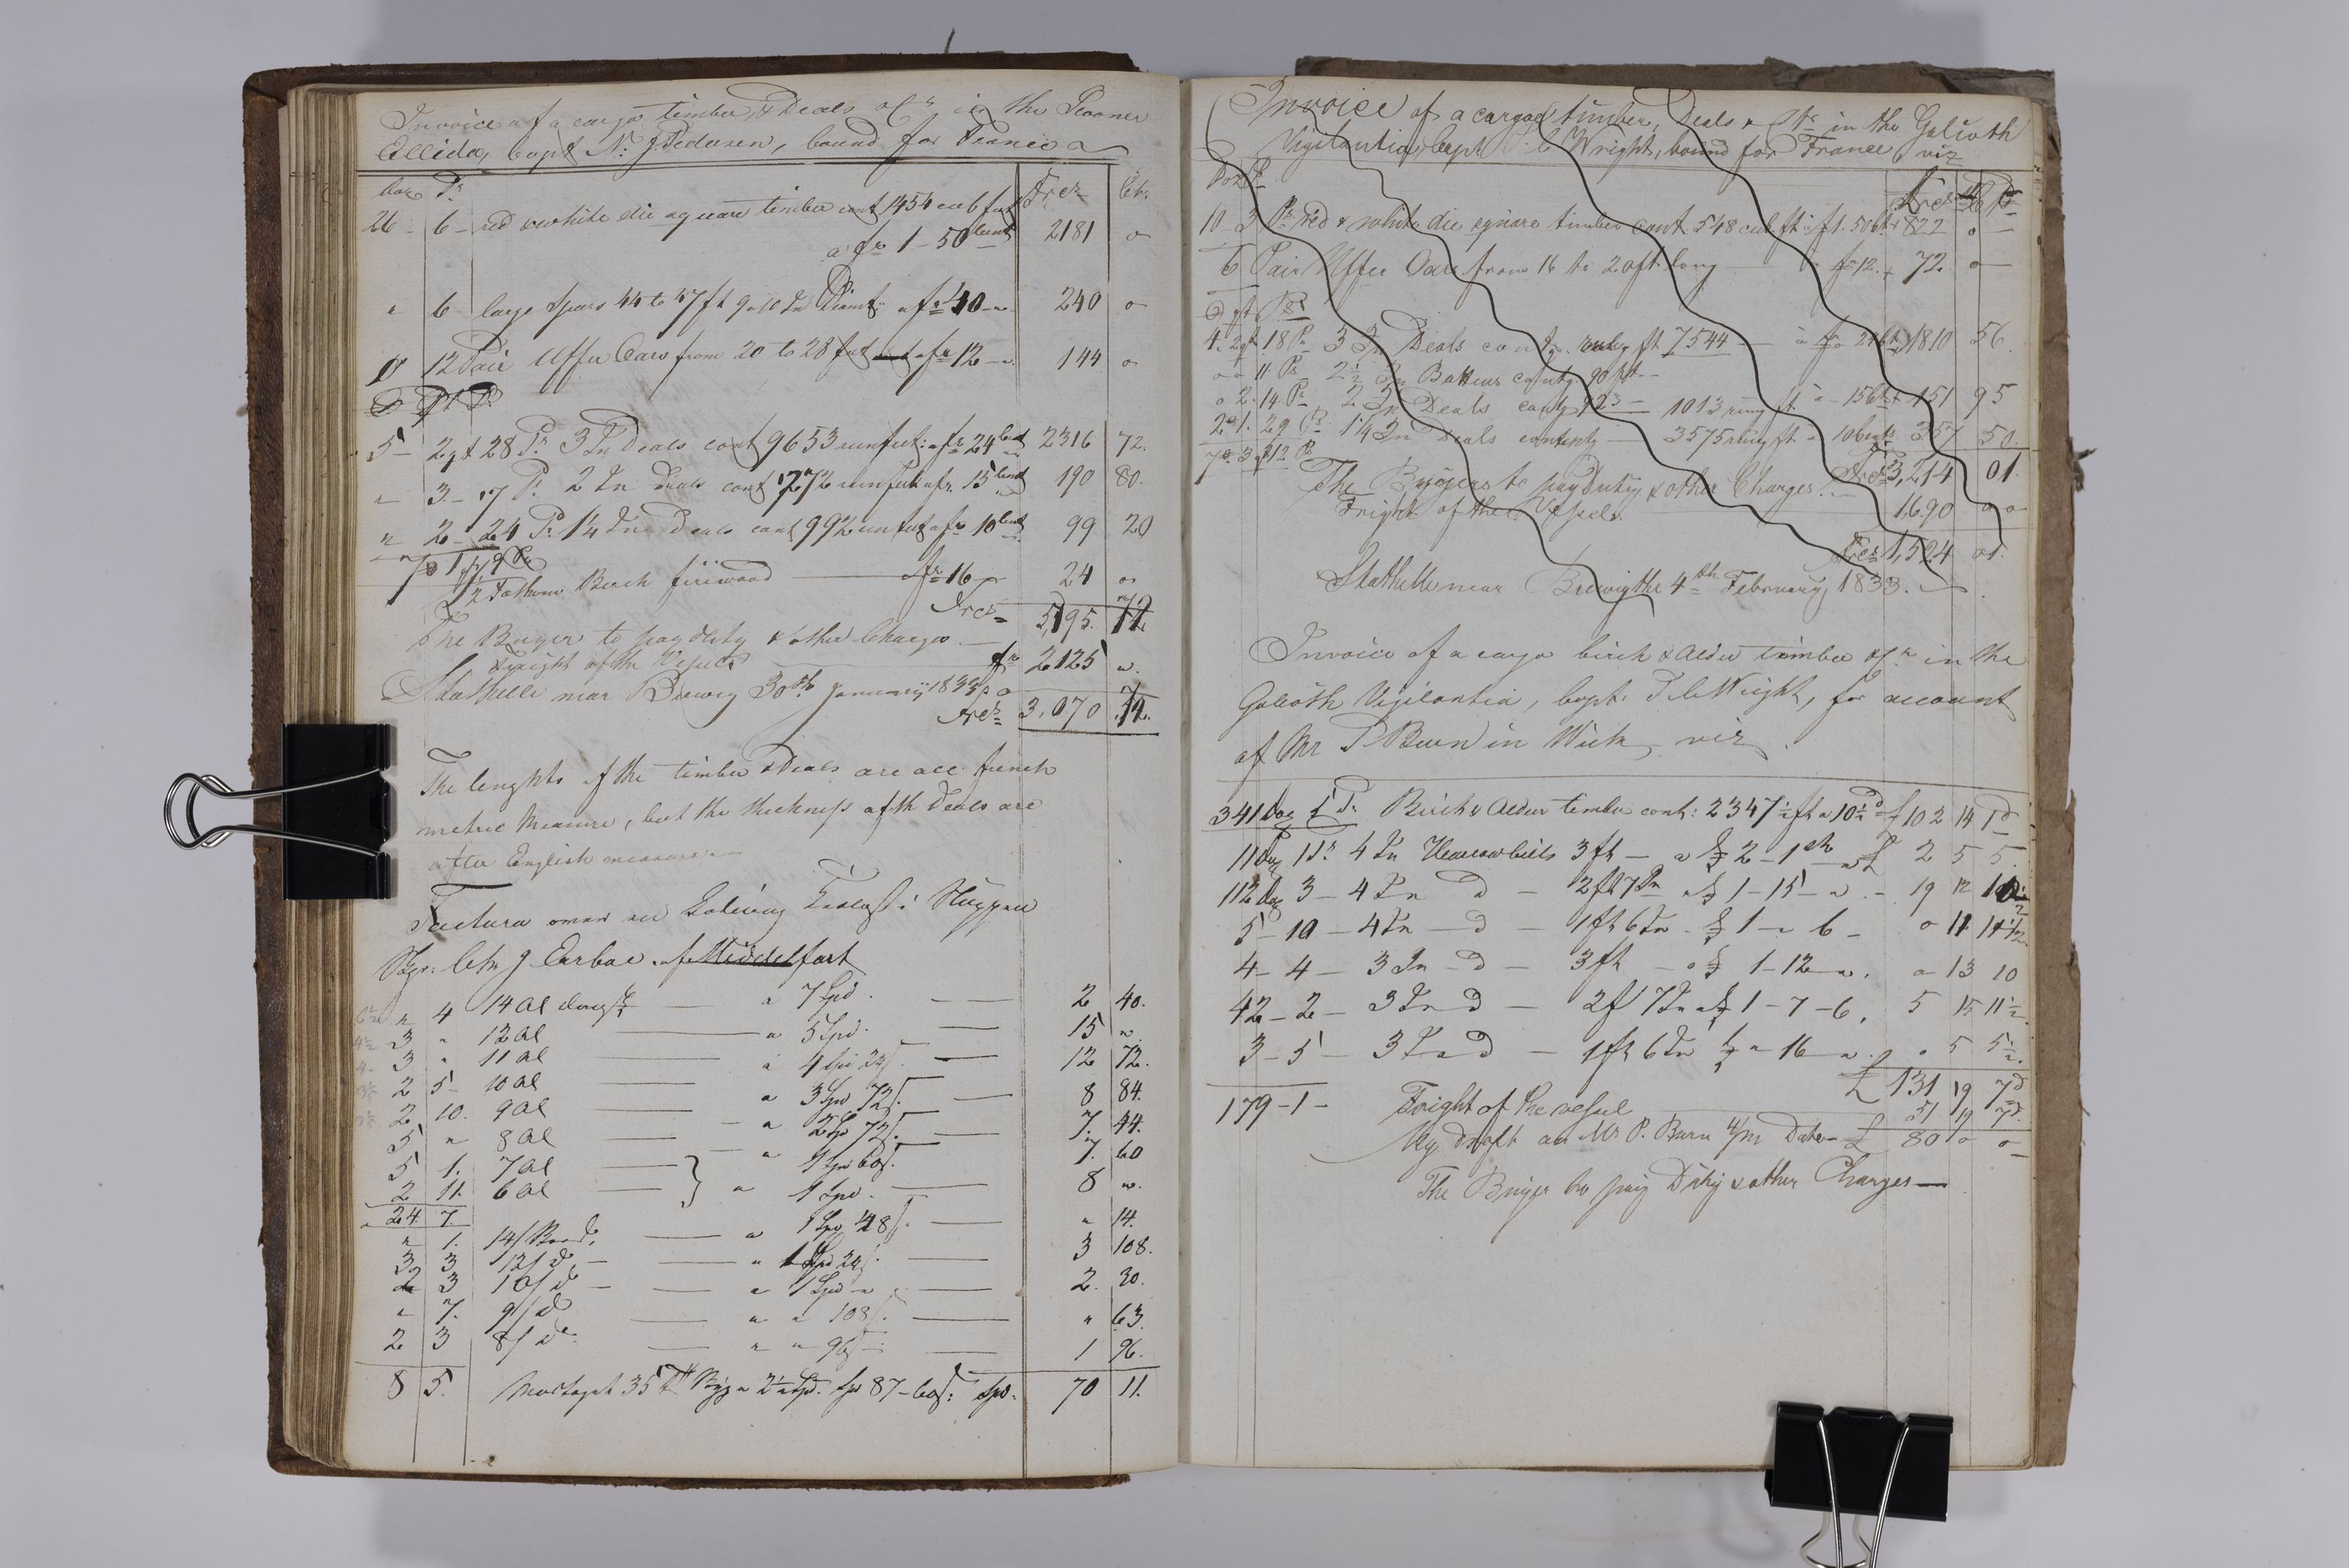 , Priscourant-tømmerpriser, 1834-38, 1834-1838, s. 59